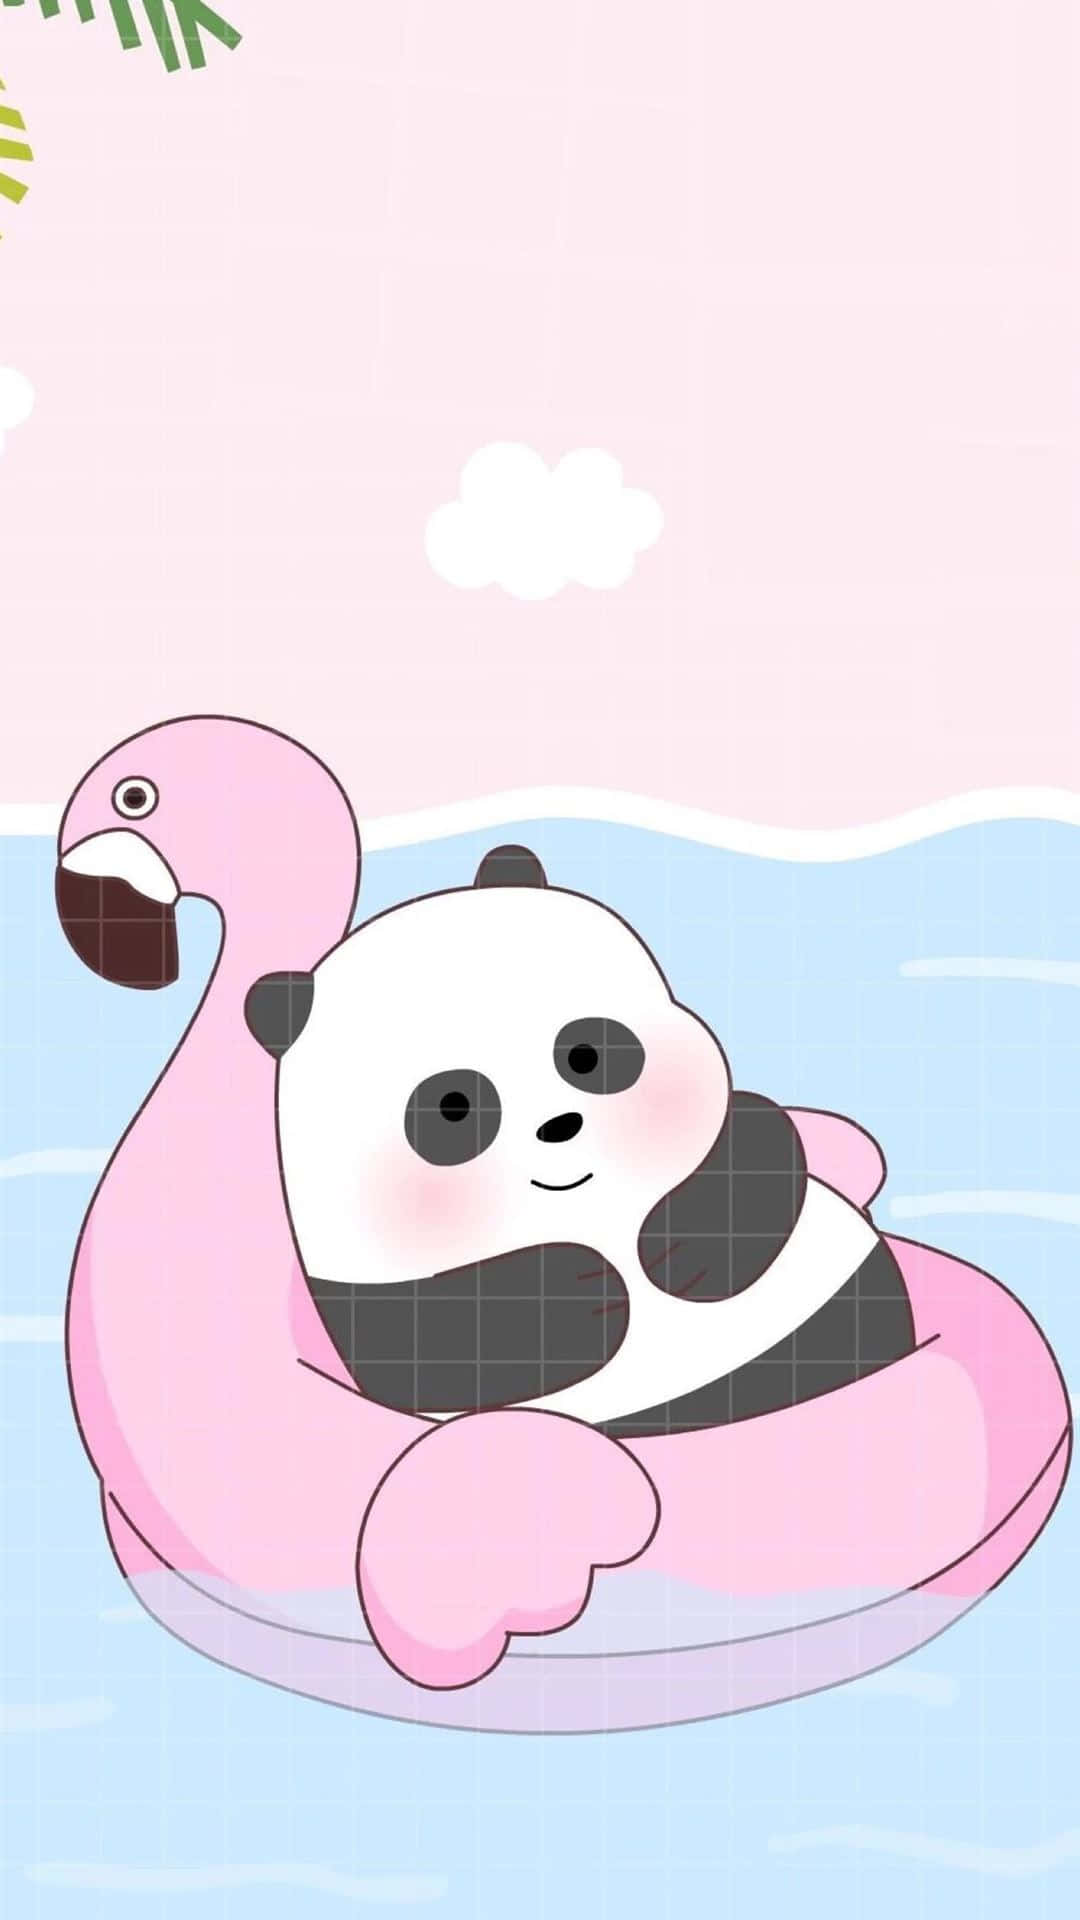 Umurso Panda Está Flutuando Em Um Flamingo Rosa No Papel De Parede Do Computador Ou Do Celular. Papel de Parede